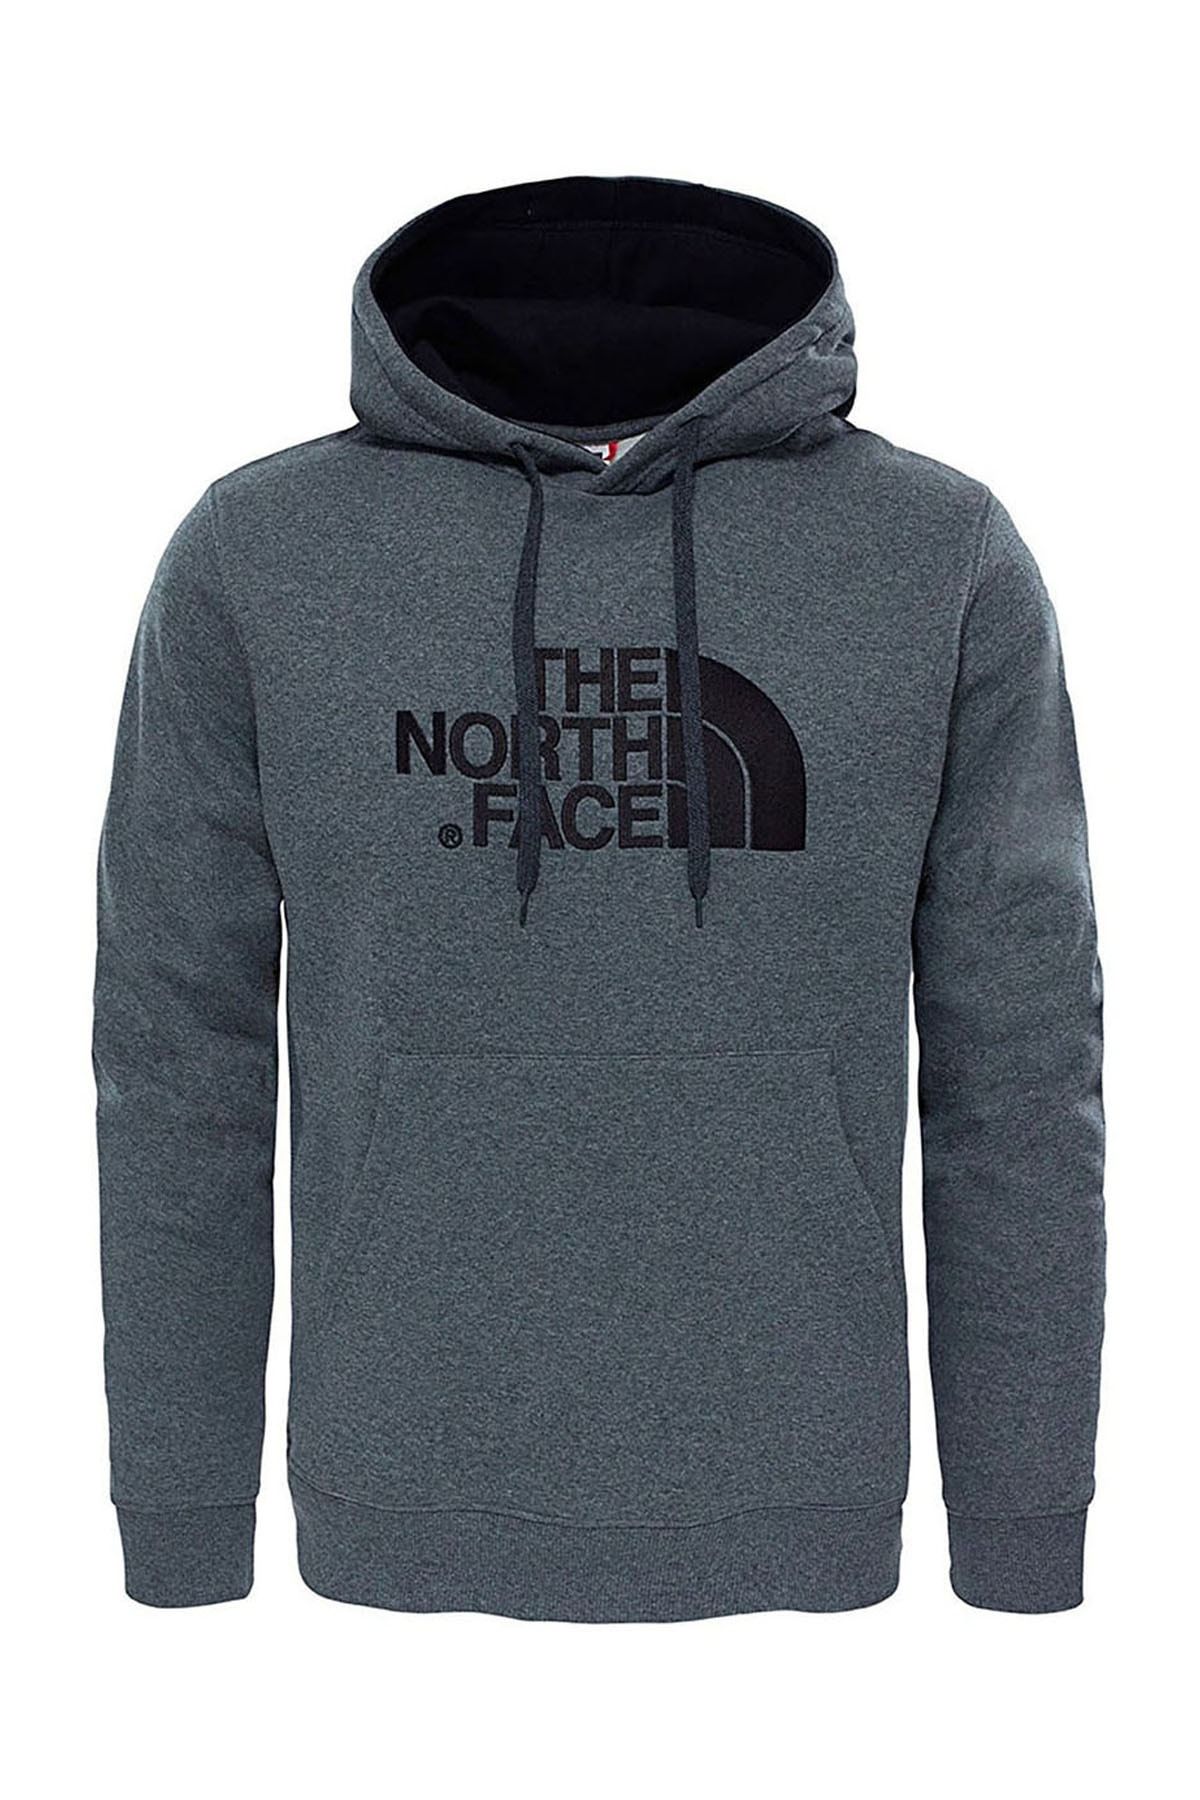 The North Face Erkek Kapşonlu Sweatshirt Drew Peak Pullover Hoodie Nf00ahjylxs1